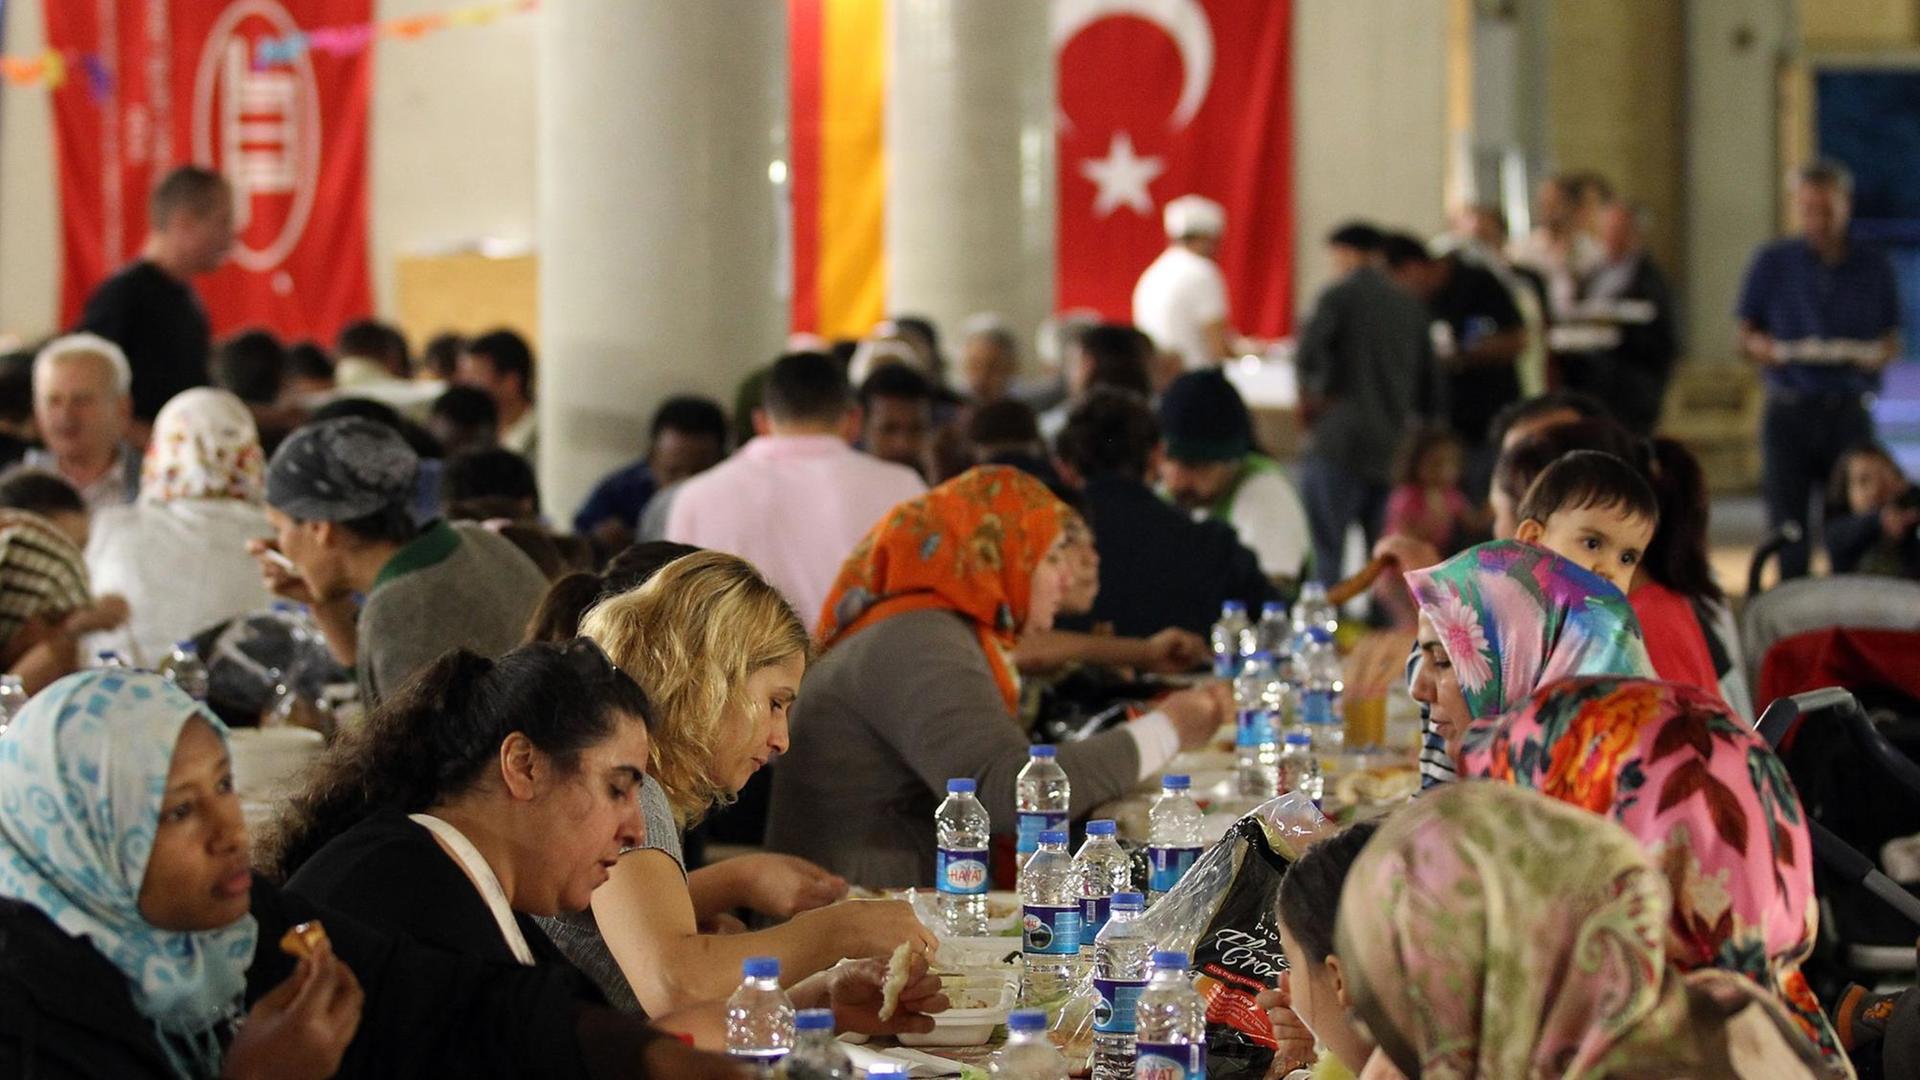 ARCHIV - Gläubige Muslime essen am 09.08.2012 in Köln in der Moschee beim gemeinsamen Fastenbrechen (Iftar). Von Samstag an verzichten gläubige Muslime tagsüber auf Essen und Trinken - bis zum 27. Juli dauert der Fastenmonat Ramadan.